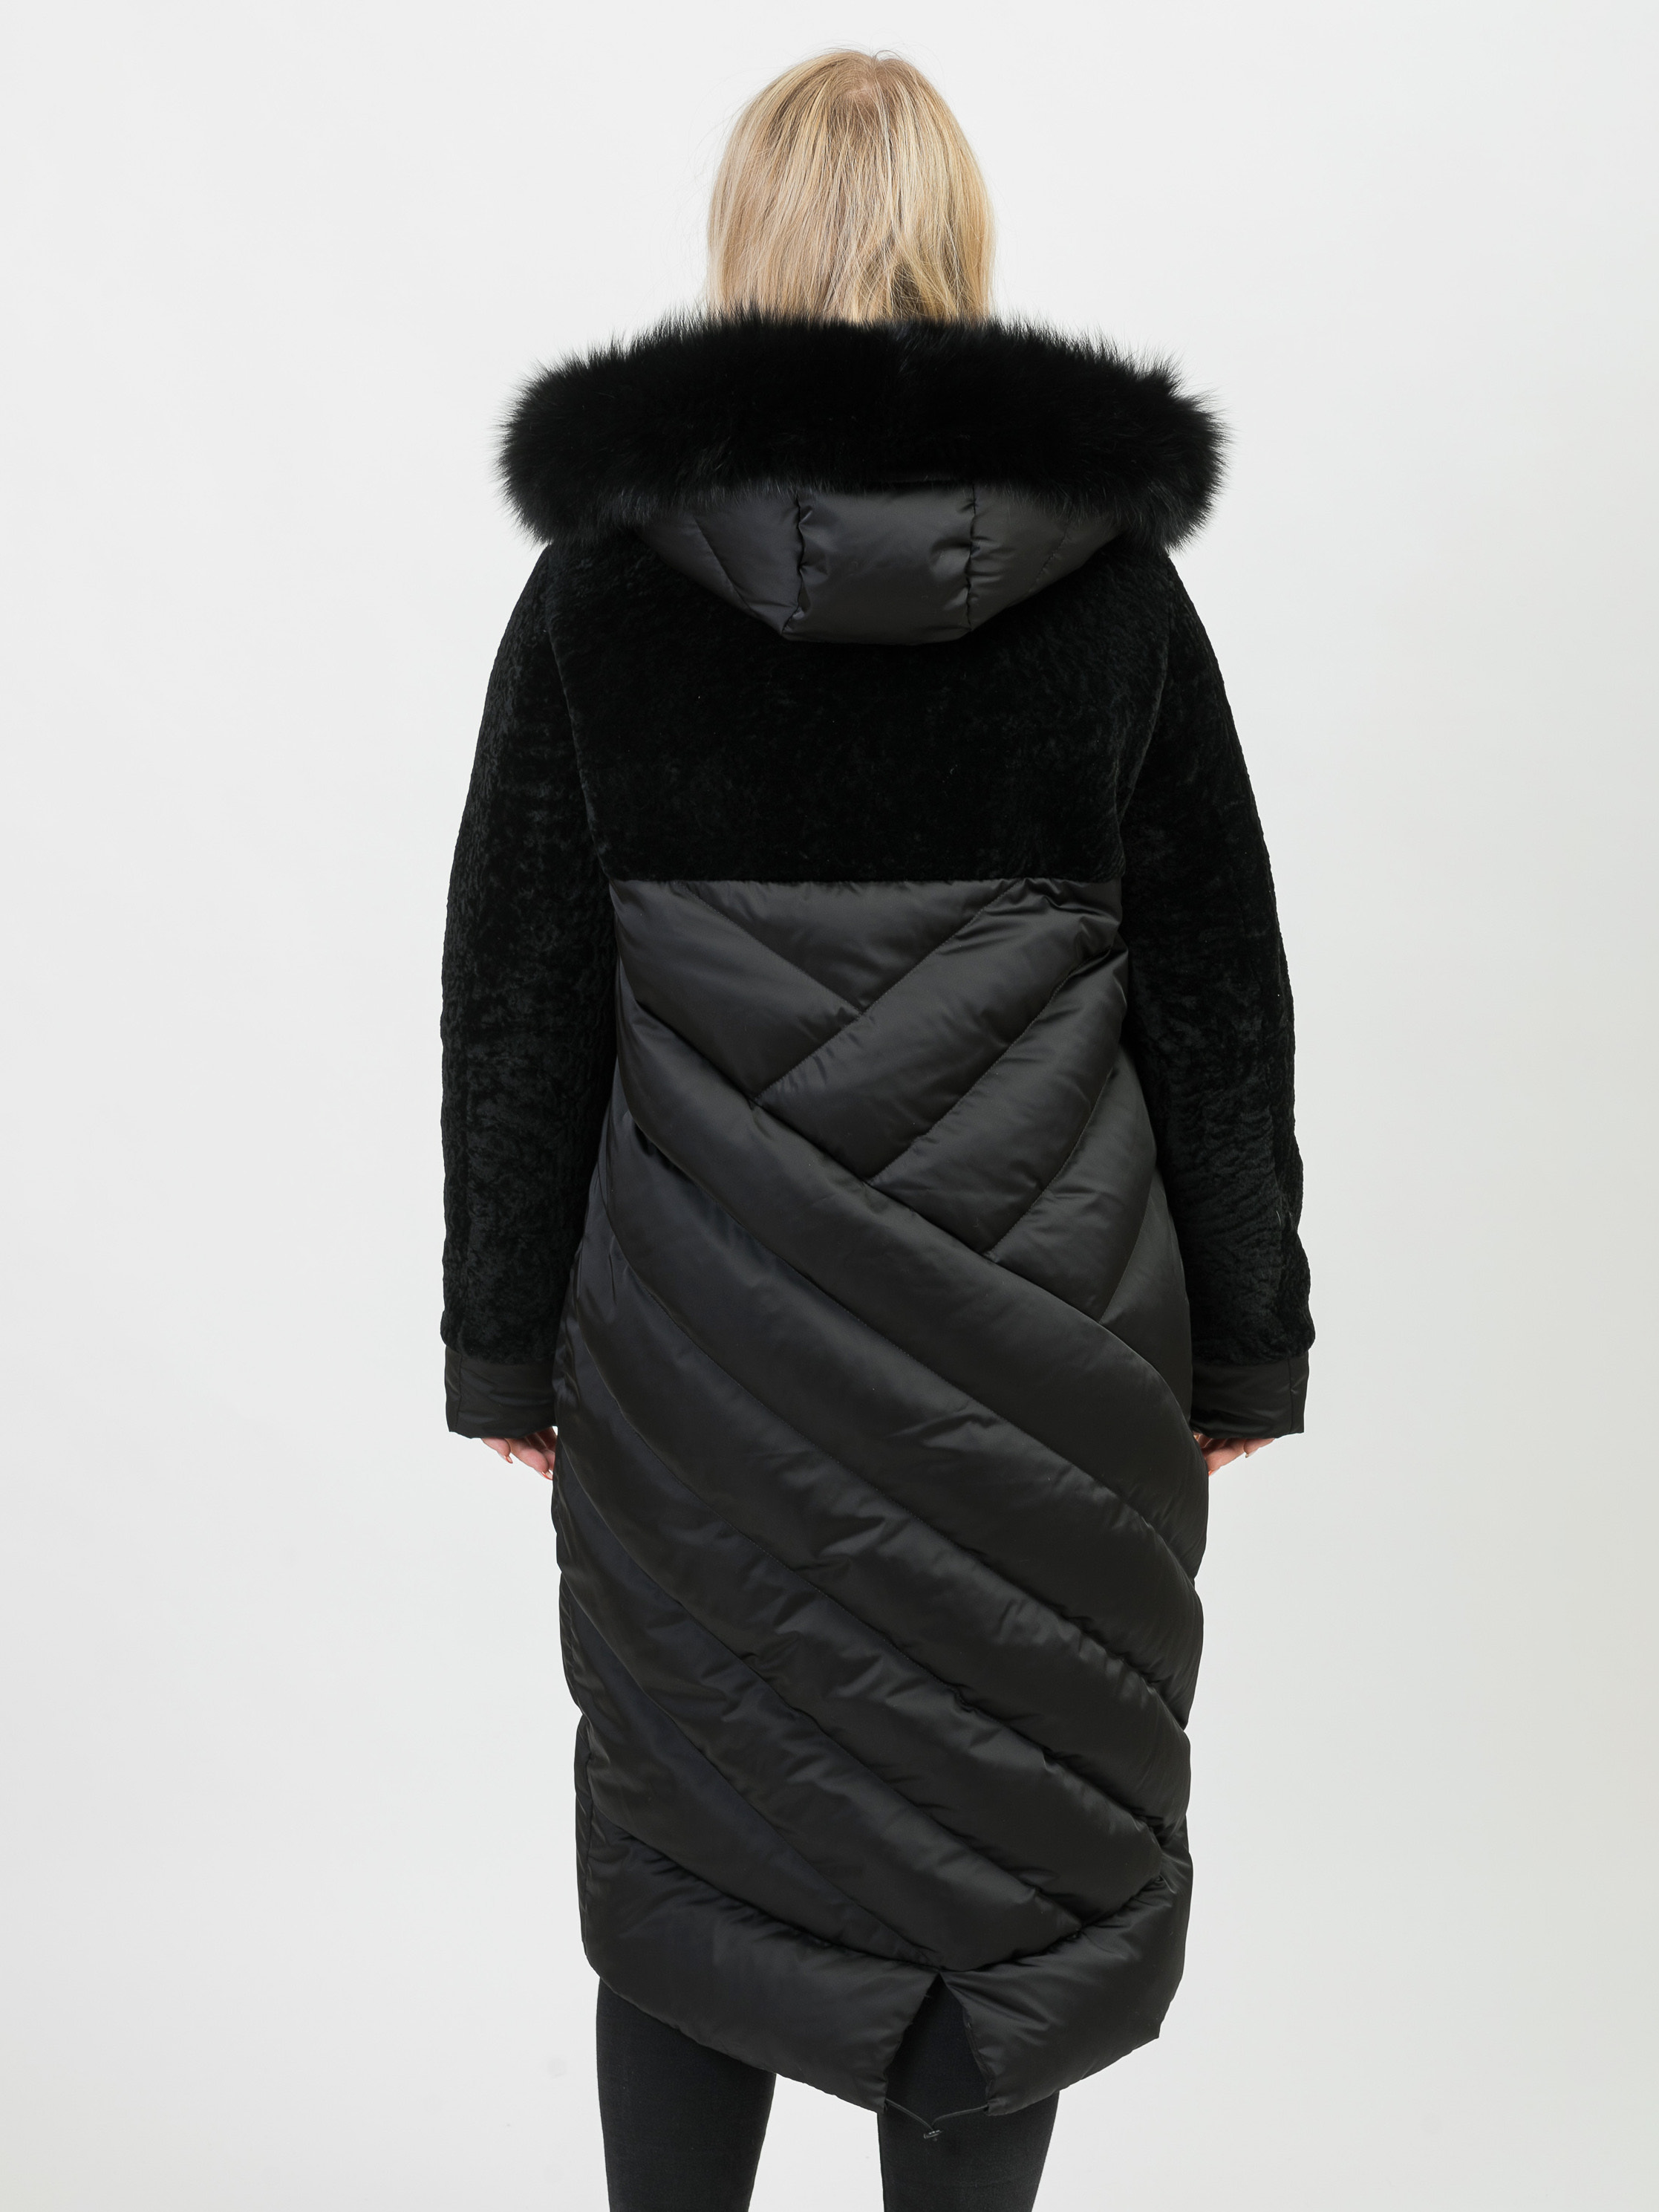 Пальто смесовое астраган+текстиль с капюшоном отделка из меха песца 52818